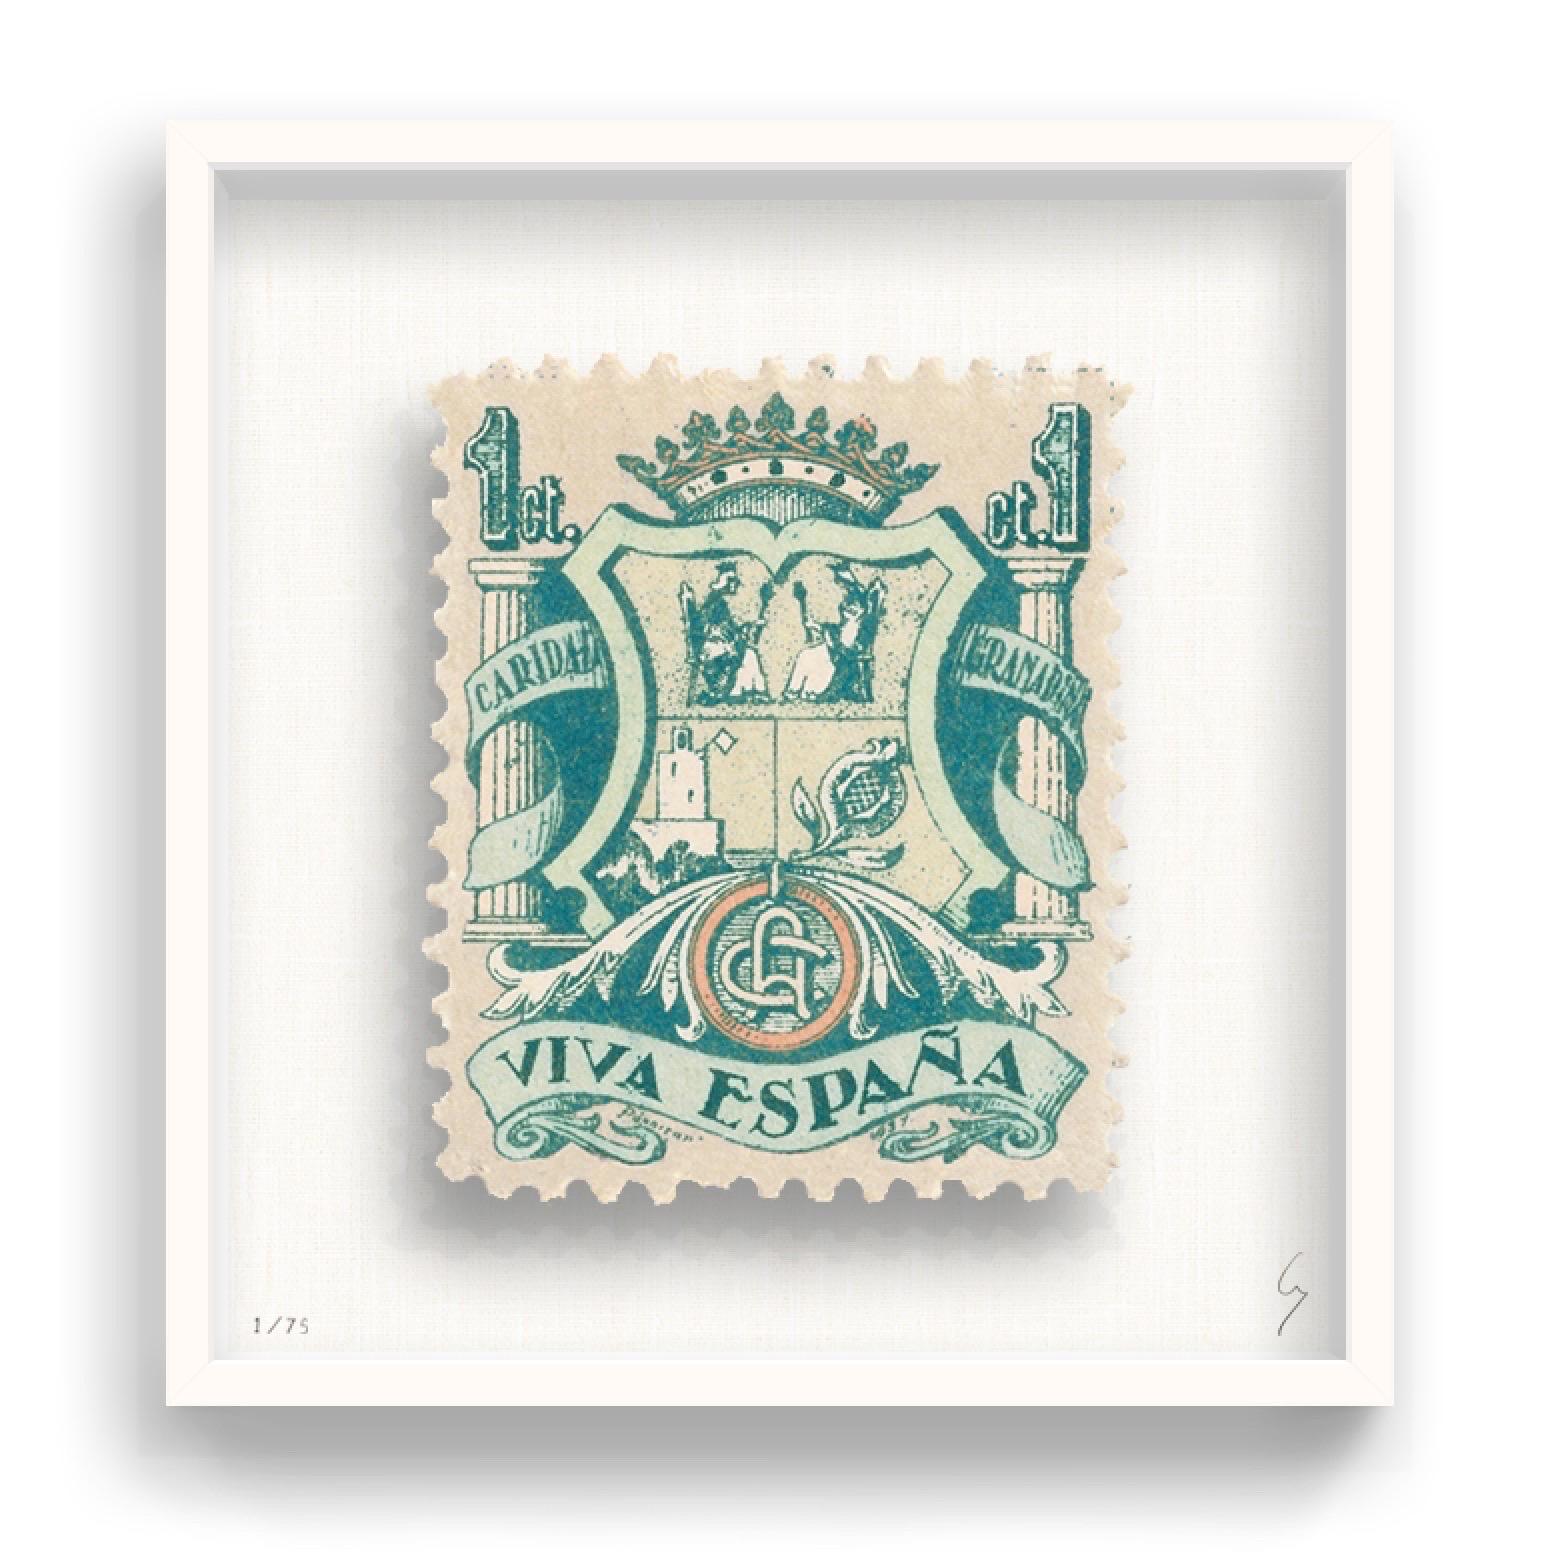 Guy Gee, Espagne (moyen)

Impression gravée à la main sur carte G.F Smith 350 g/m².
31 x 35 cm (12 1/5 x 13 4/5)
Cadre inclus 
Edition de 75 

Chaque œuvre de Guy a été réimaginée numériquement à partir d'un timbre-poste original. Découpée et finie